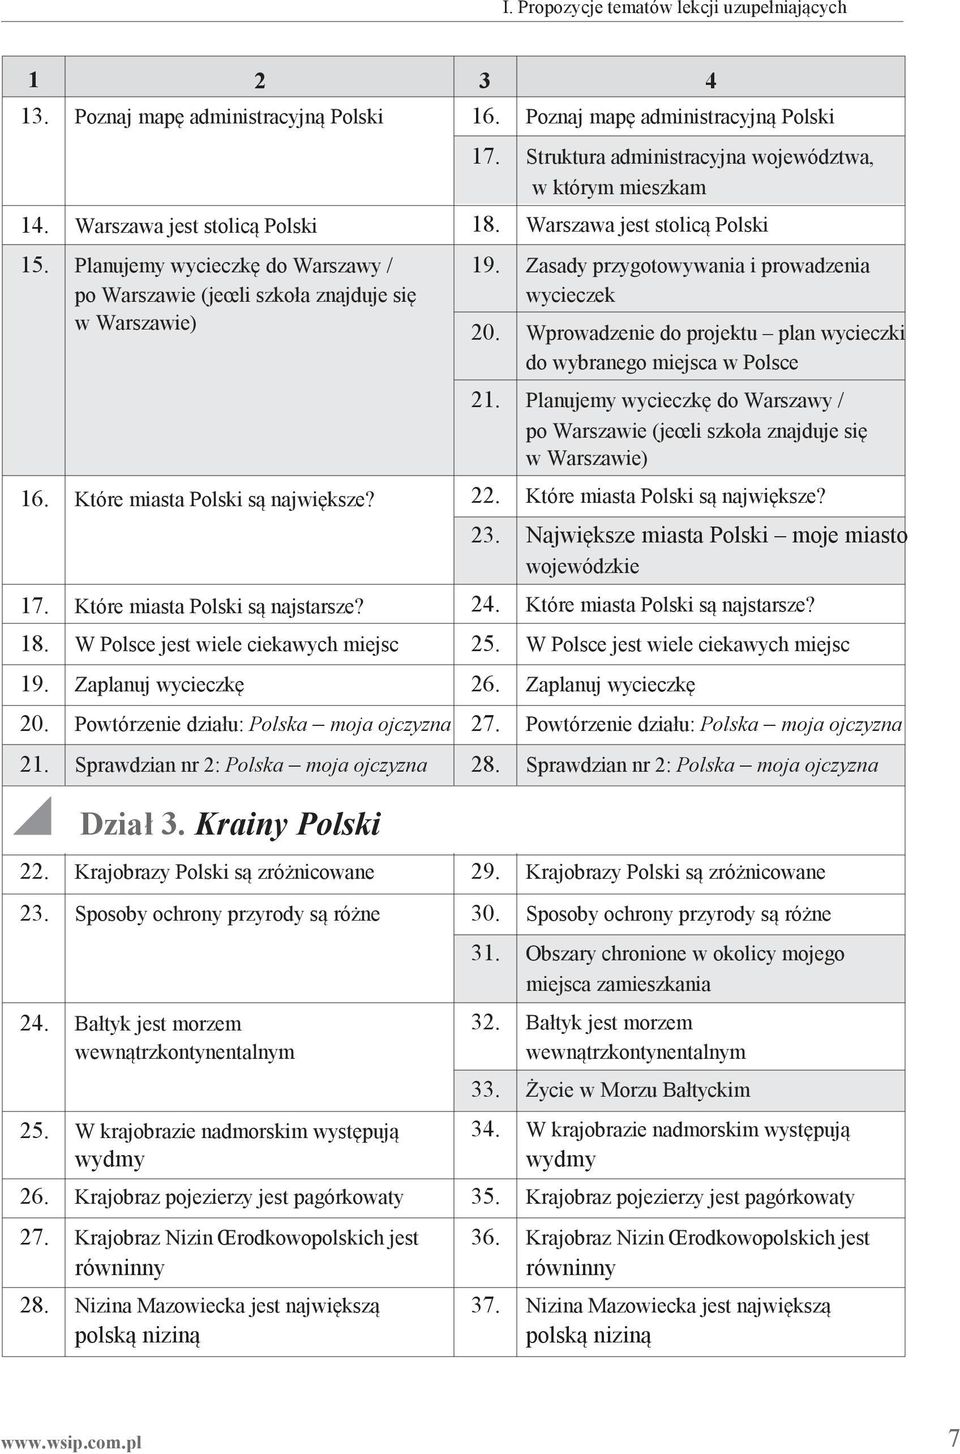 W Polsce jest wiele ciekawych miejsc 19. Zaplanuj wycieczkę 18. Warszawa jest stolicą Polski 19. Zasady przygotowywania i prowadzenia wycieczek 20.